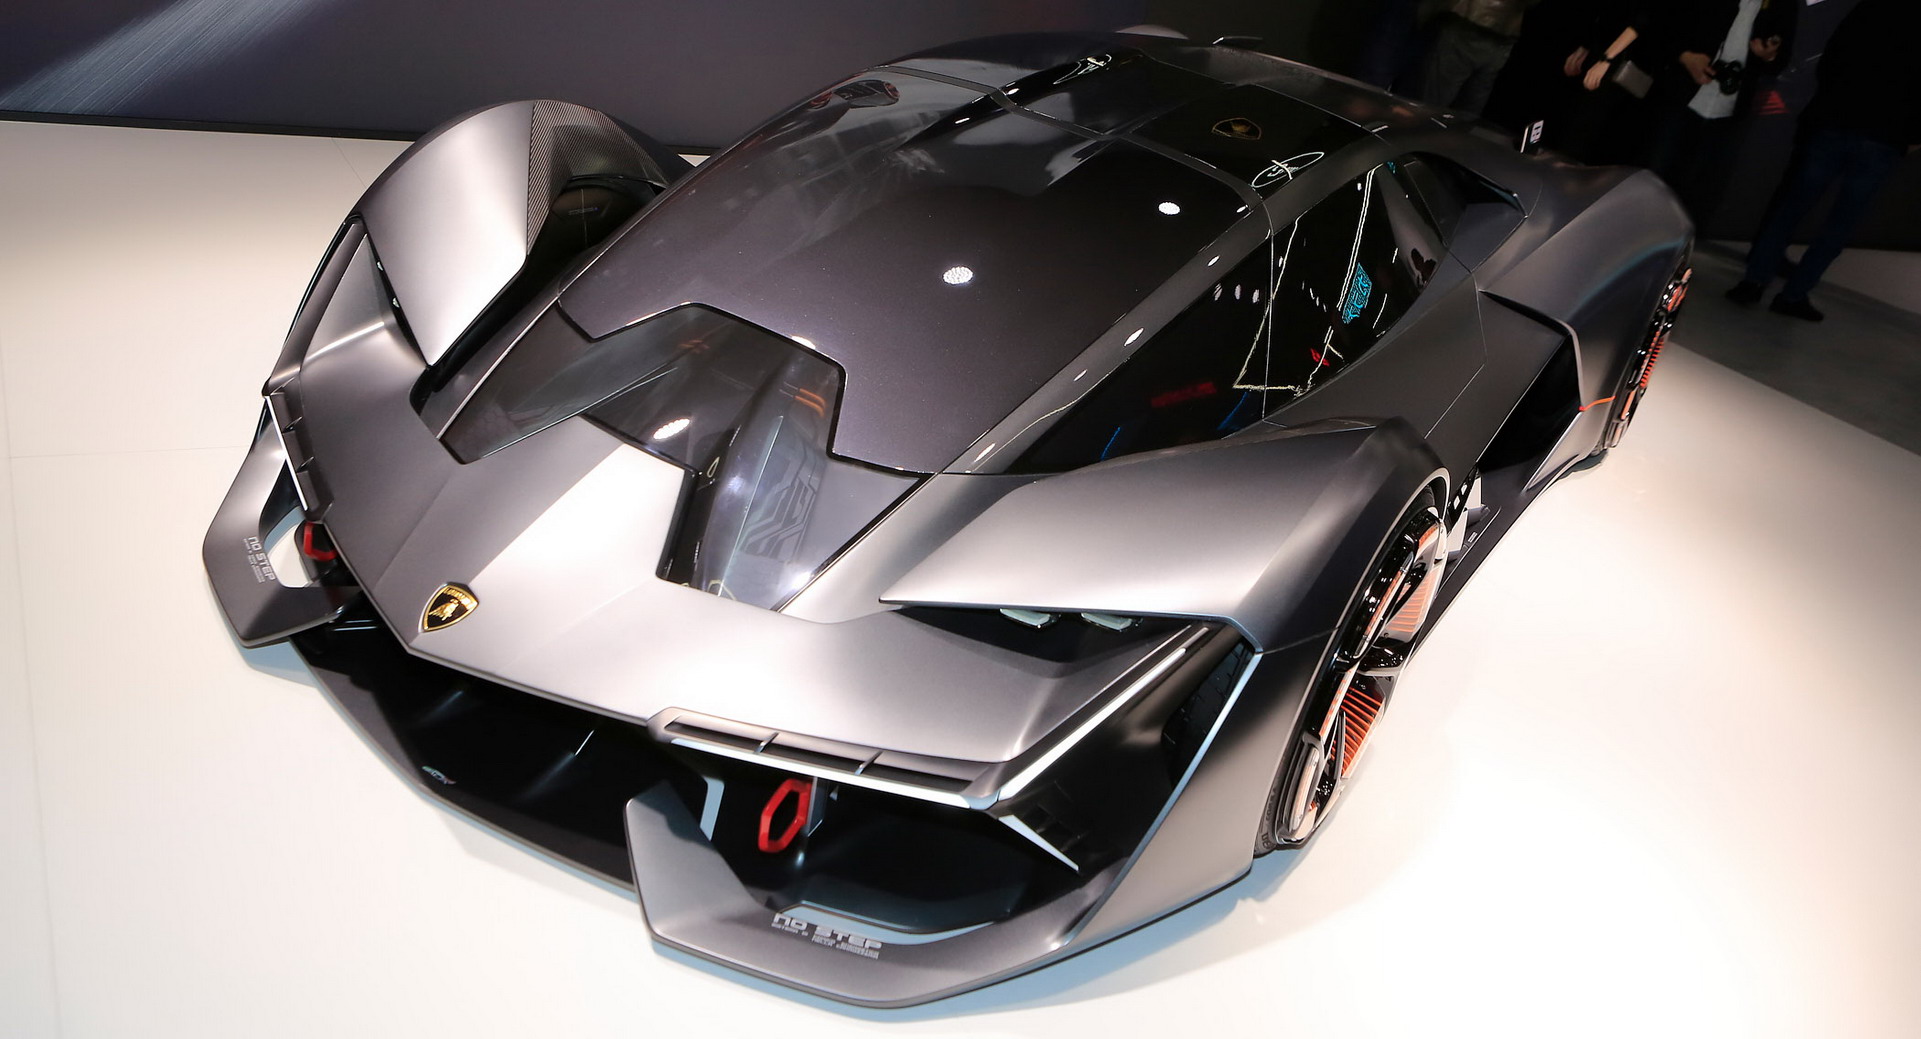 Lamborghini's unveils the futuristic Terzo Millennio concept